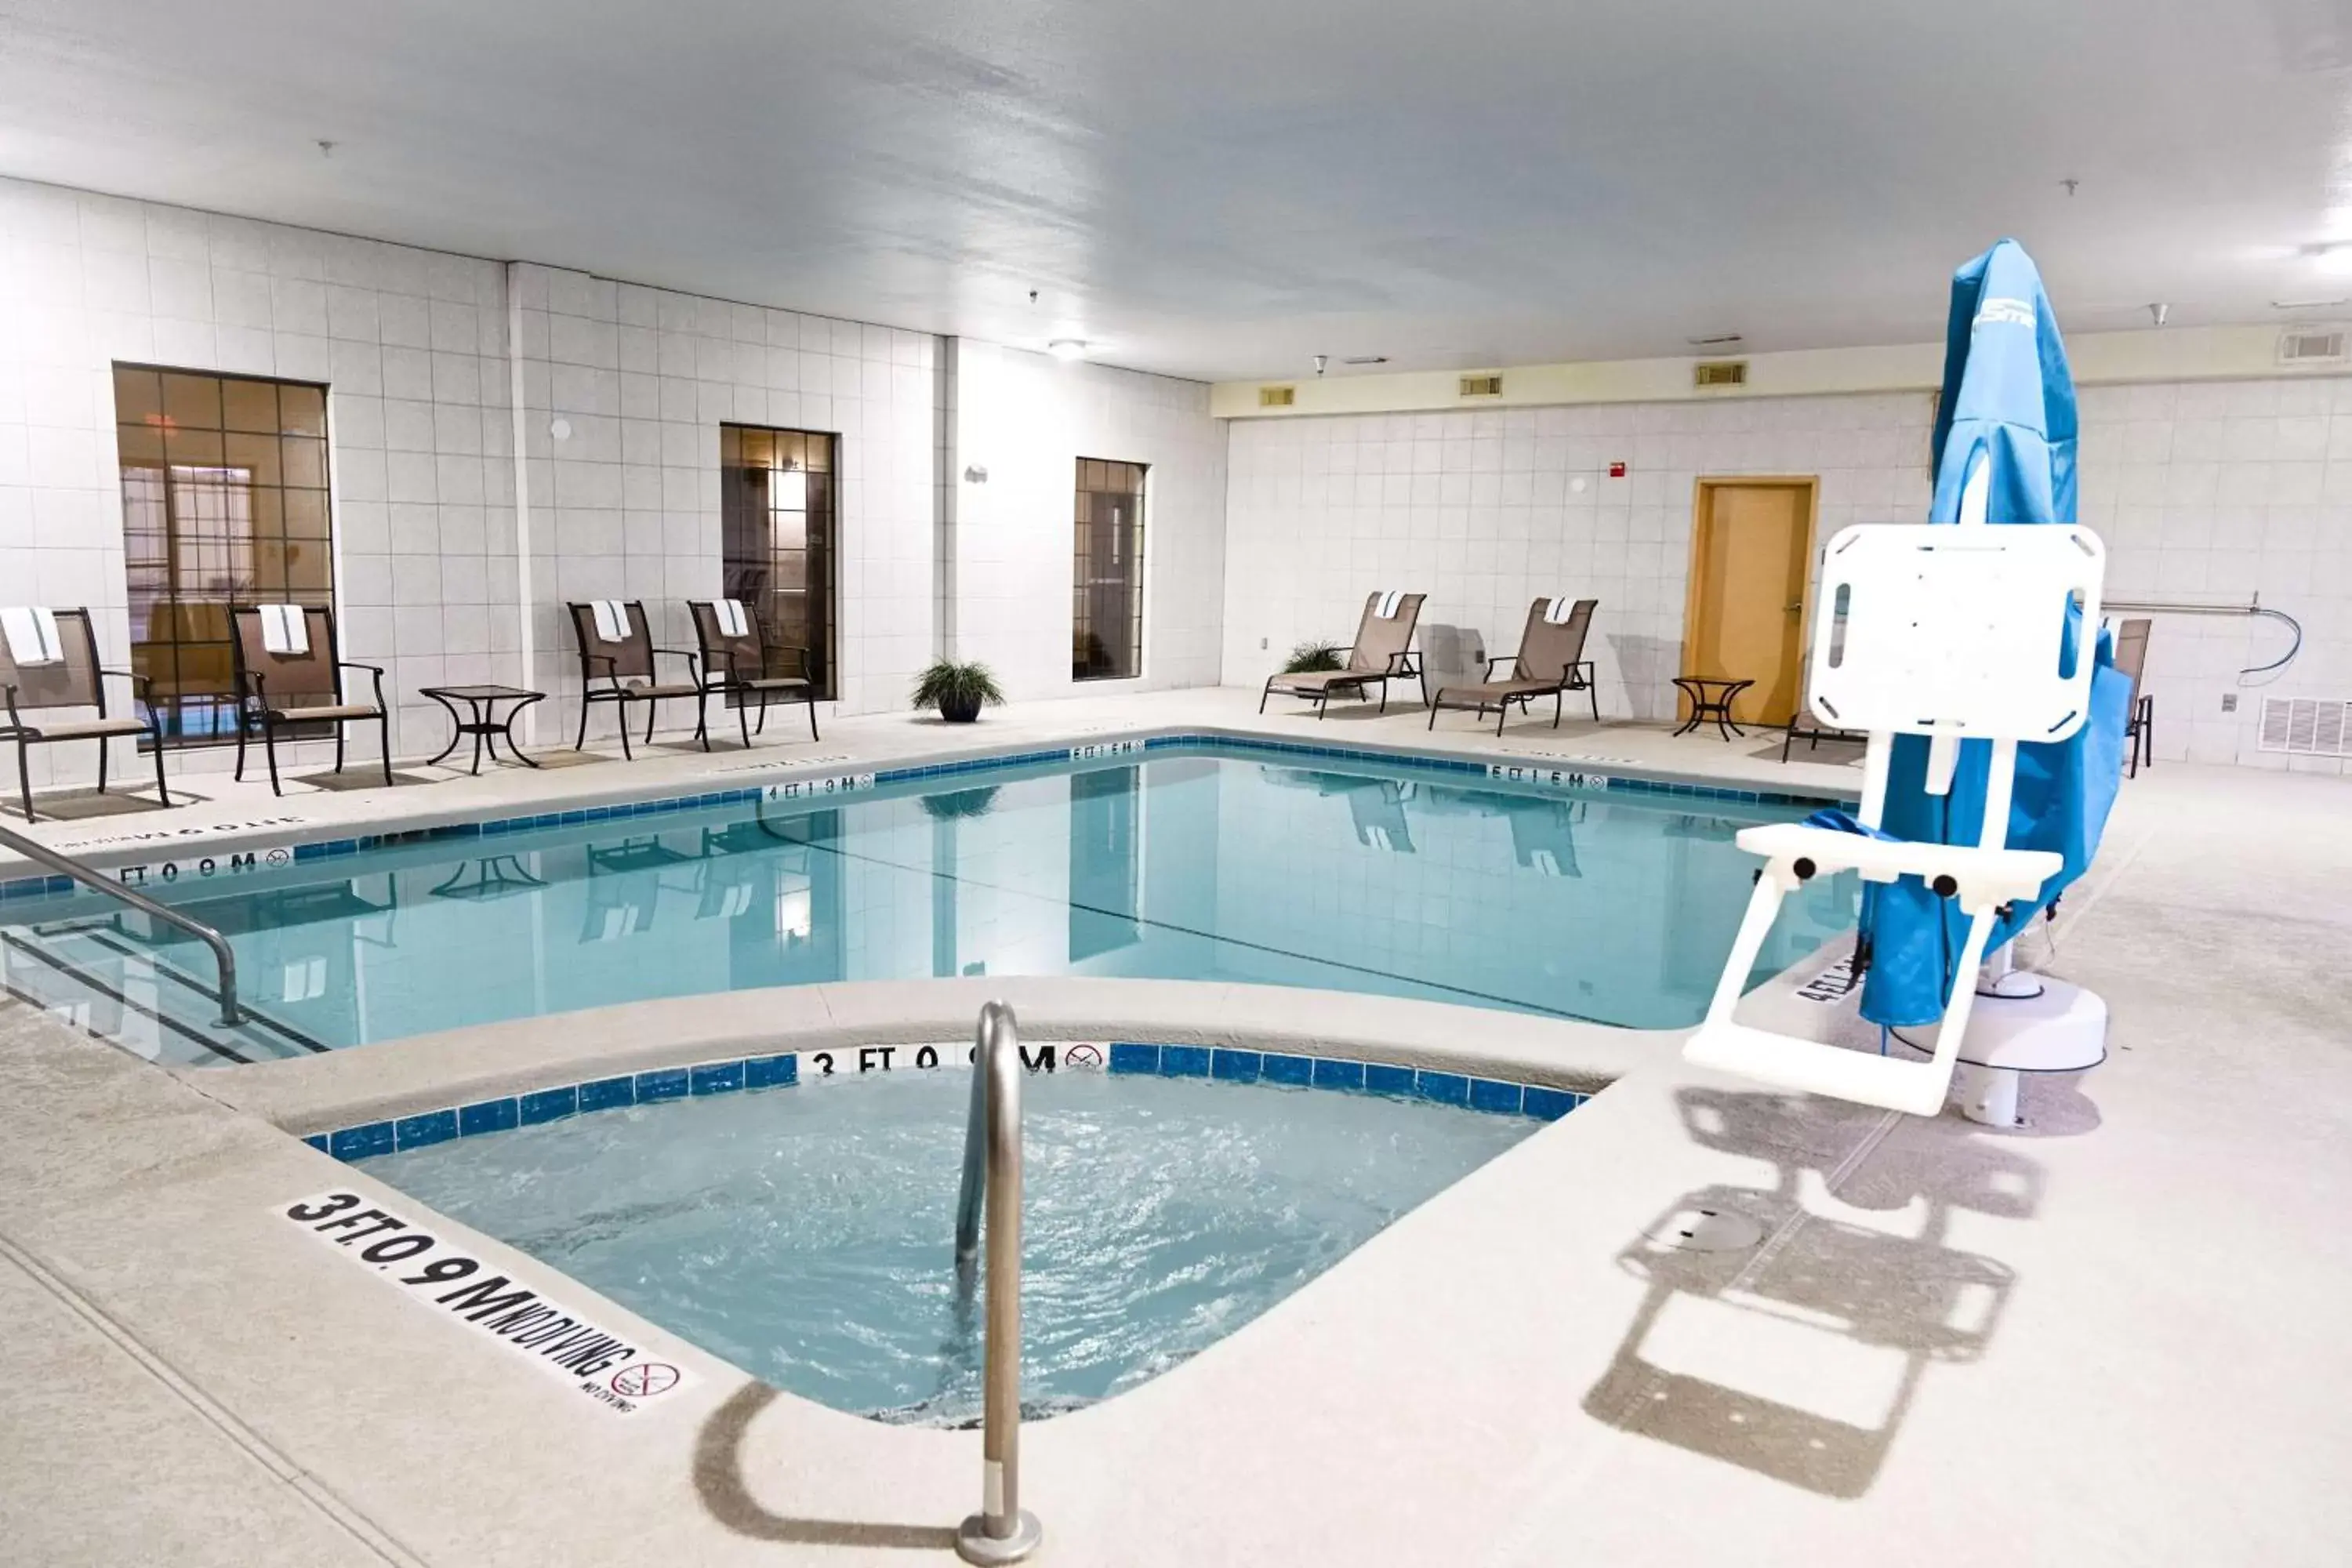 On site, Swimming Pool in Best Western Plus Shamrock Inn & Suites